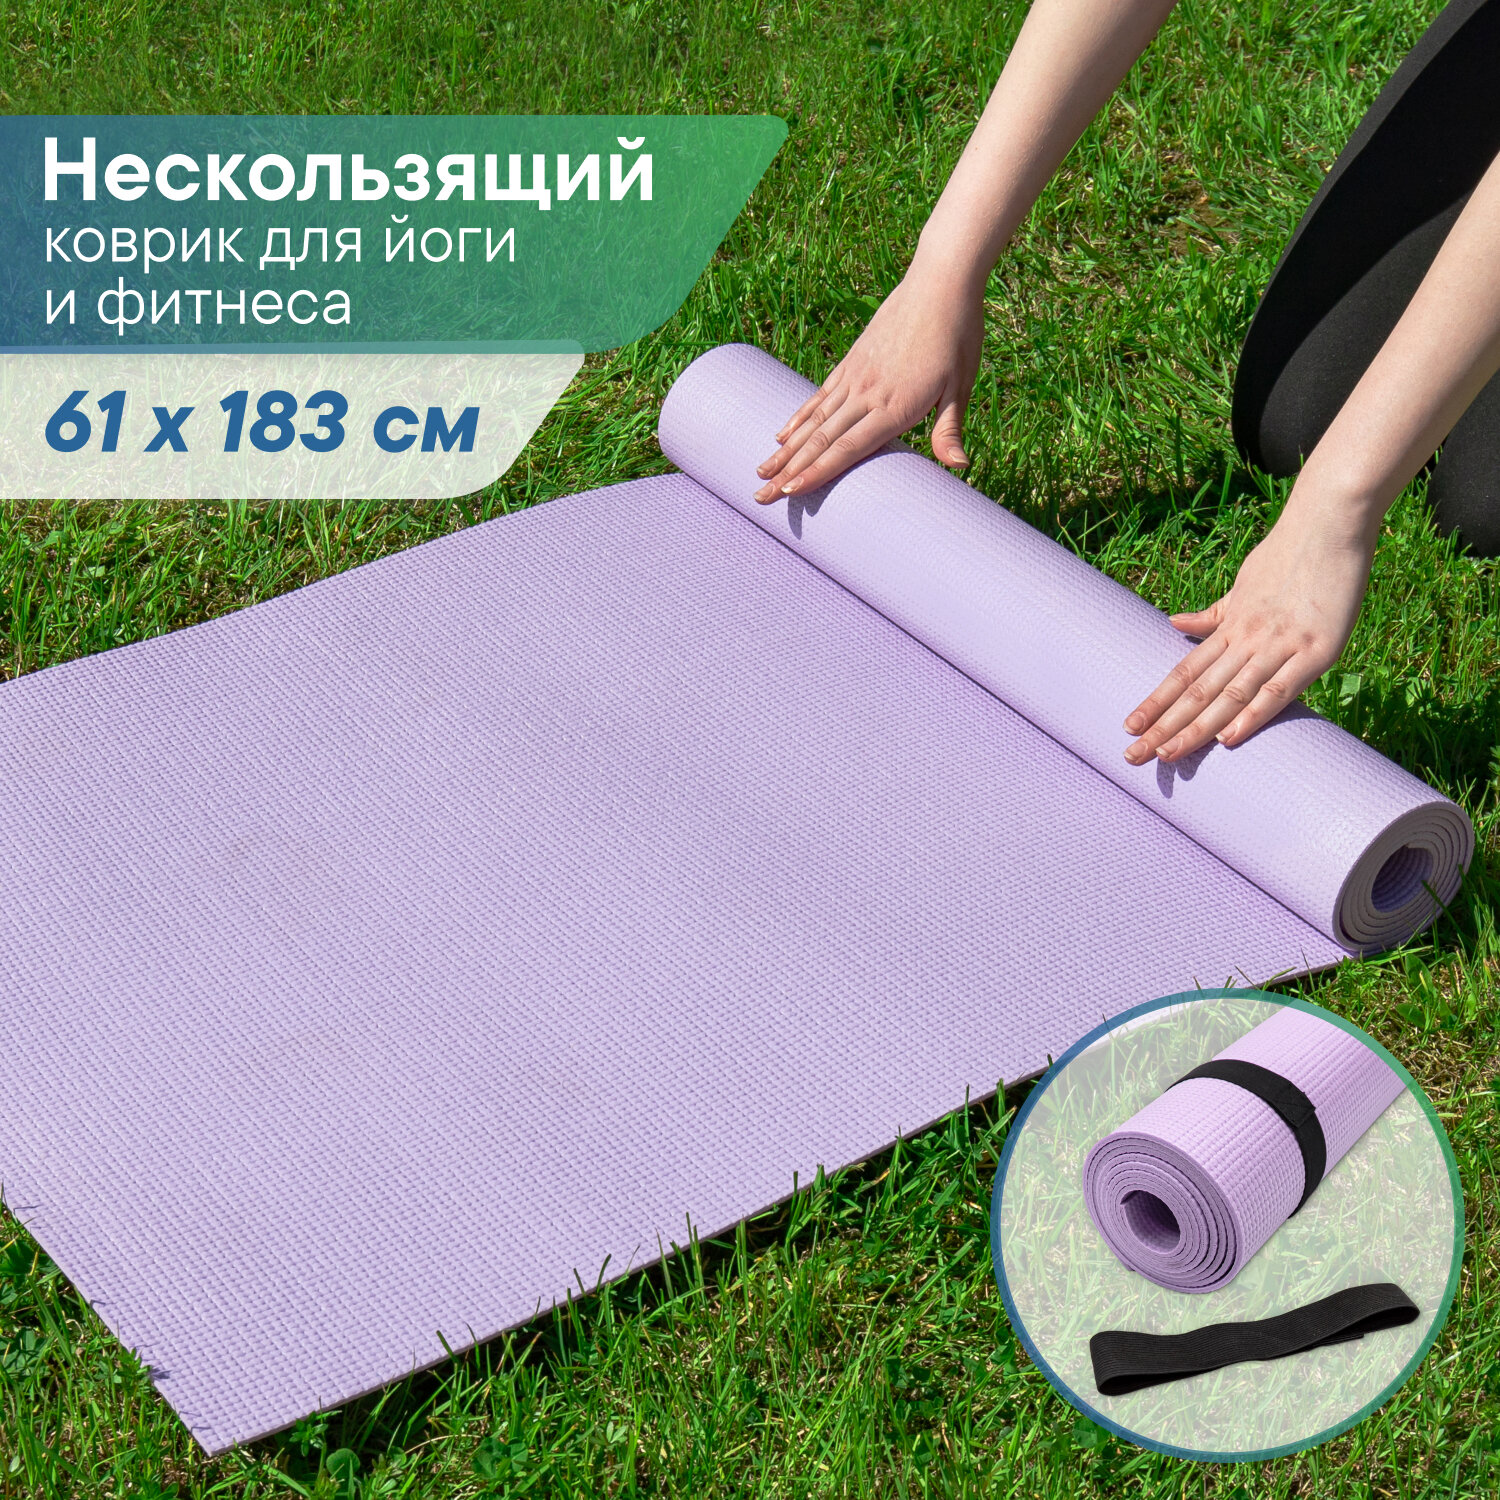 Коврик VILINA спортивный для йоги и фитнеса, растяжки, гимнастики 0,5 см 61х183 см лавандовый фиолетовый